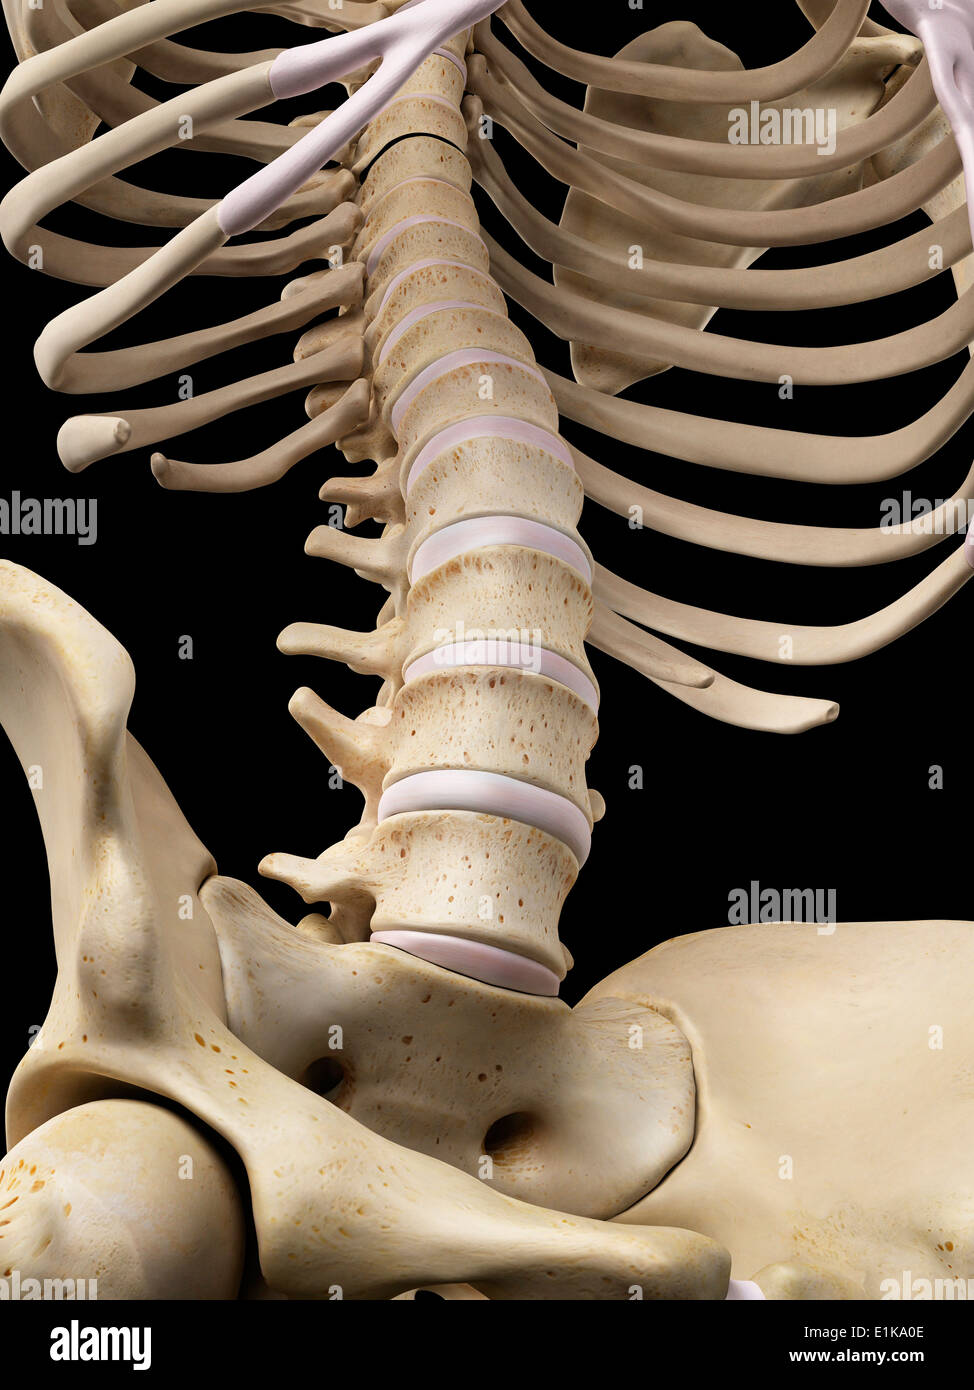 Human lumbar bones computer artwork. Stock Photo